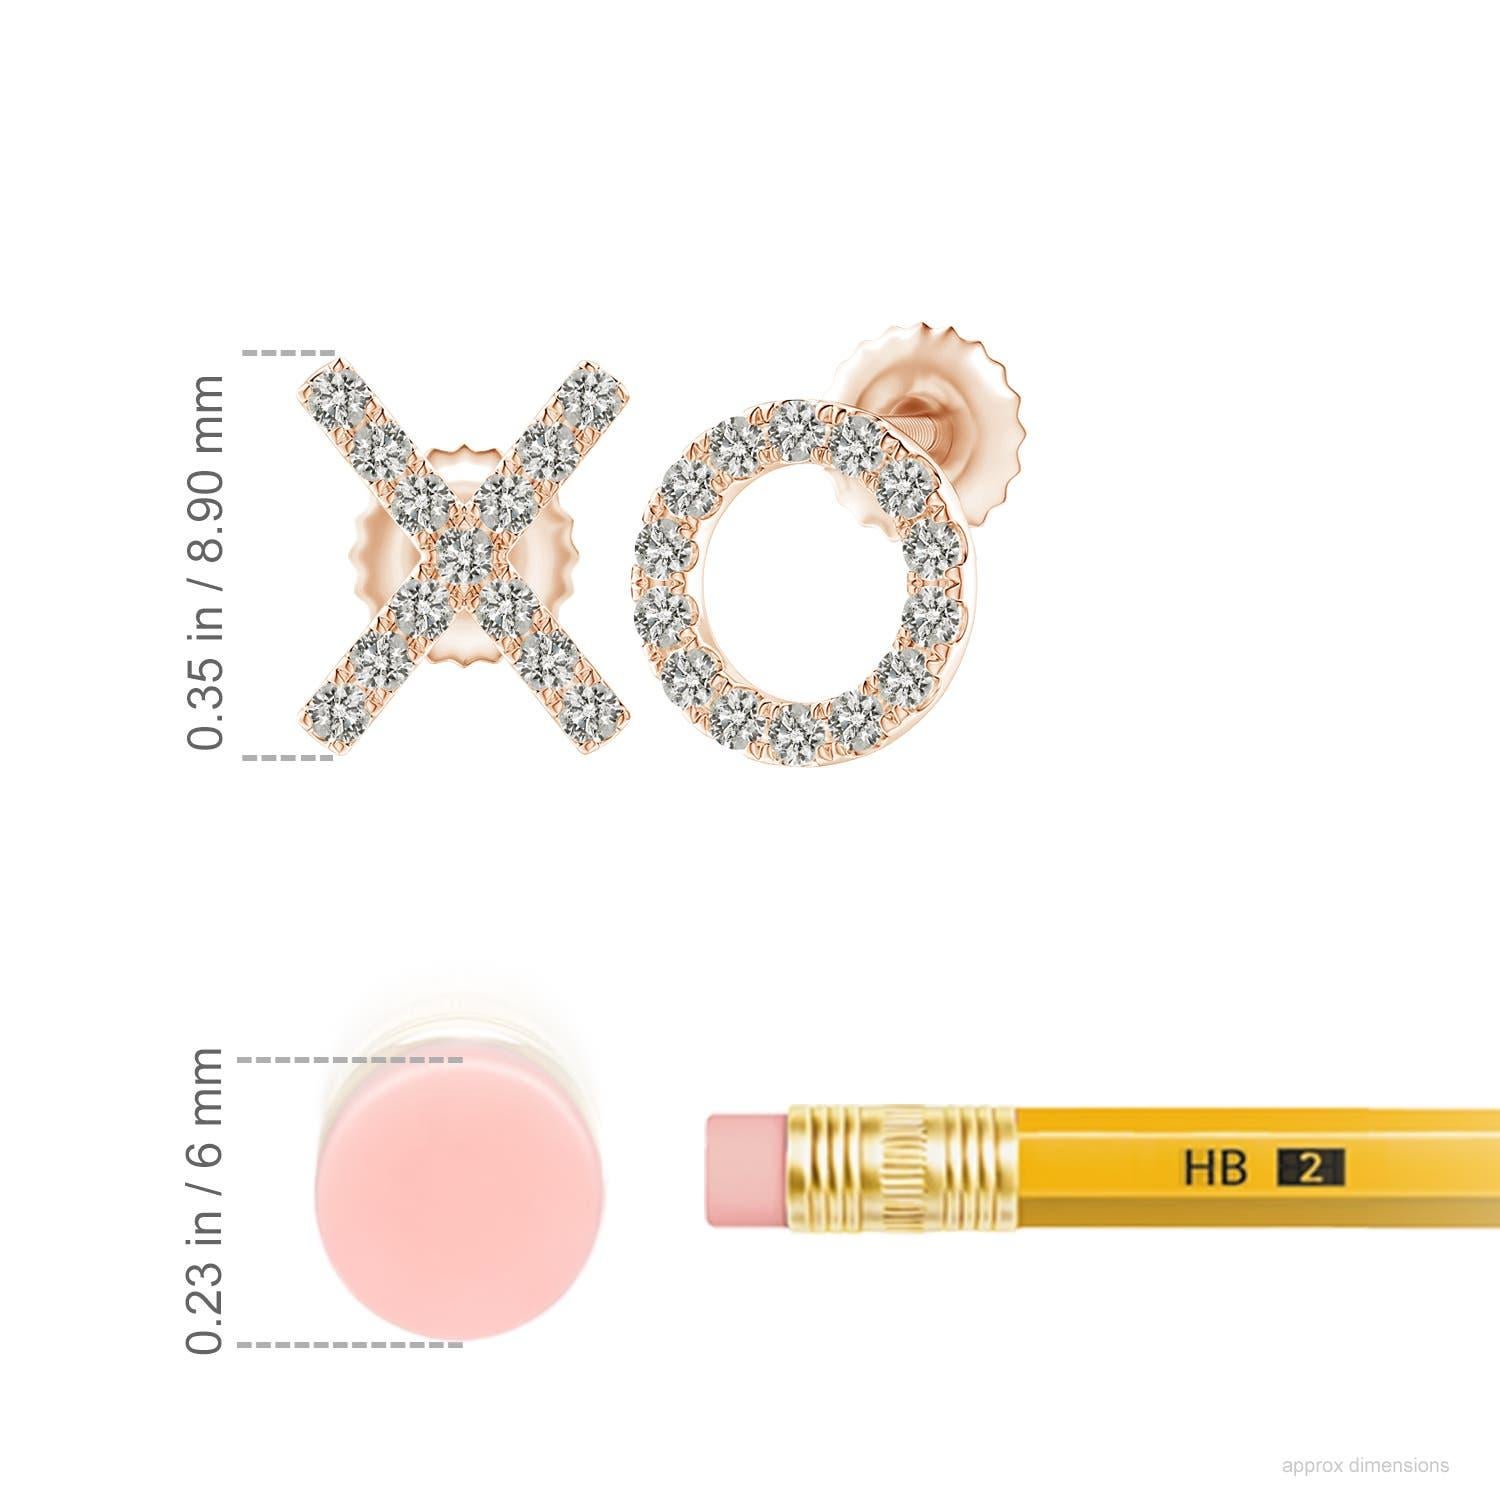 Les boucles d'oreilles XO conçues en or rose 14 carats sont tout simplement fascinantes. Des diamants ronds étincelants dans une monture en pavé U embellissent brillamment le motif XO, ajoutant une touche éblouissante à ces adorables boucles